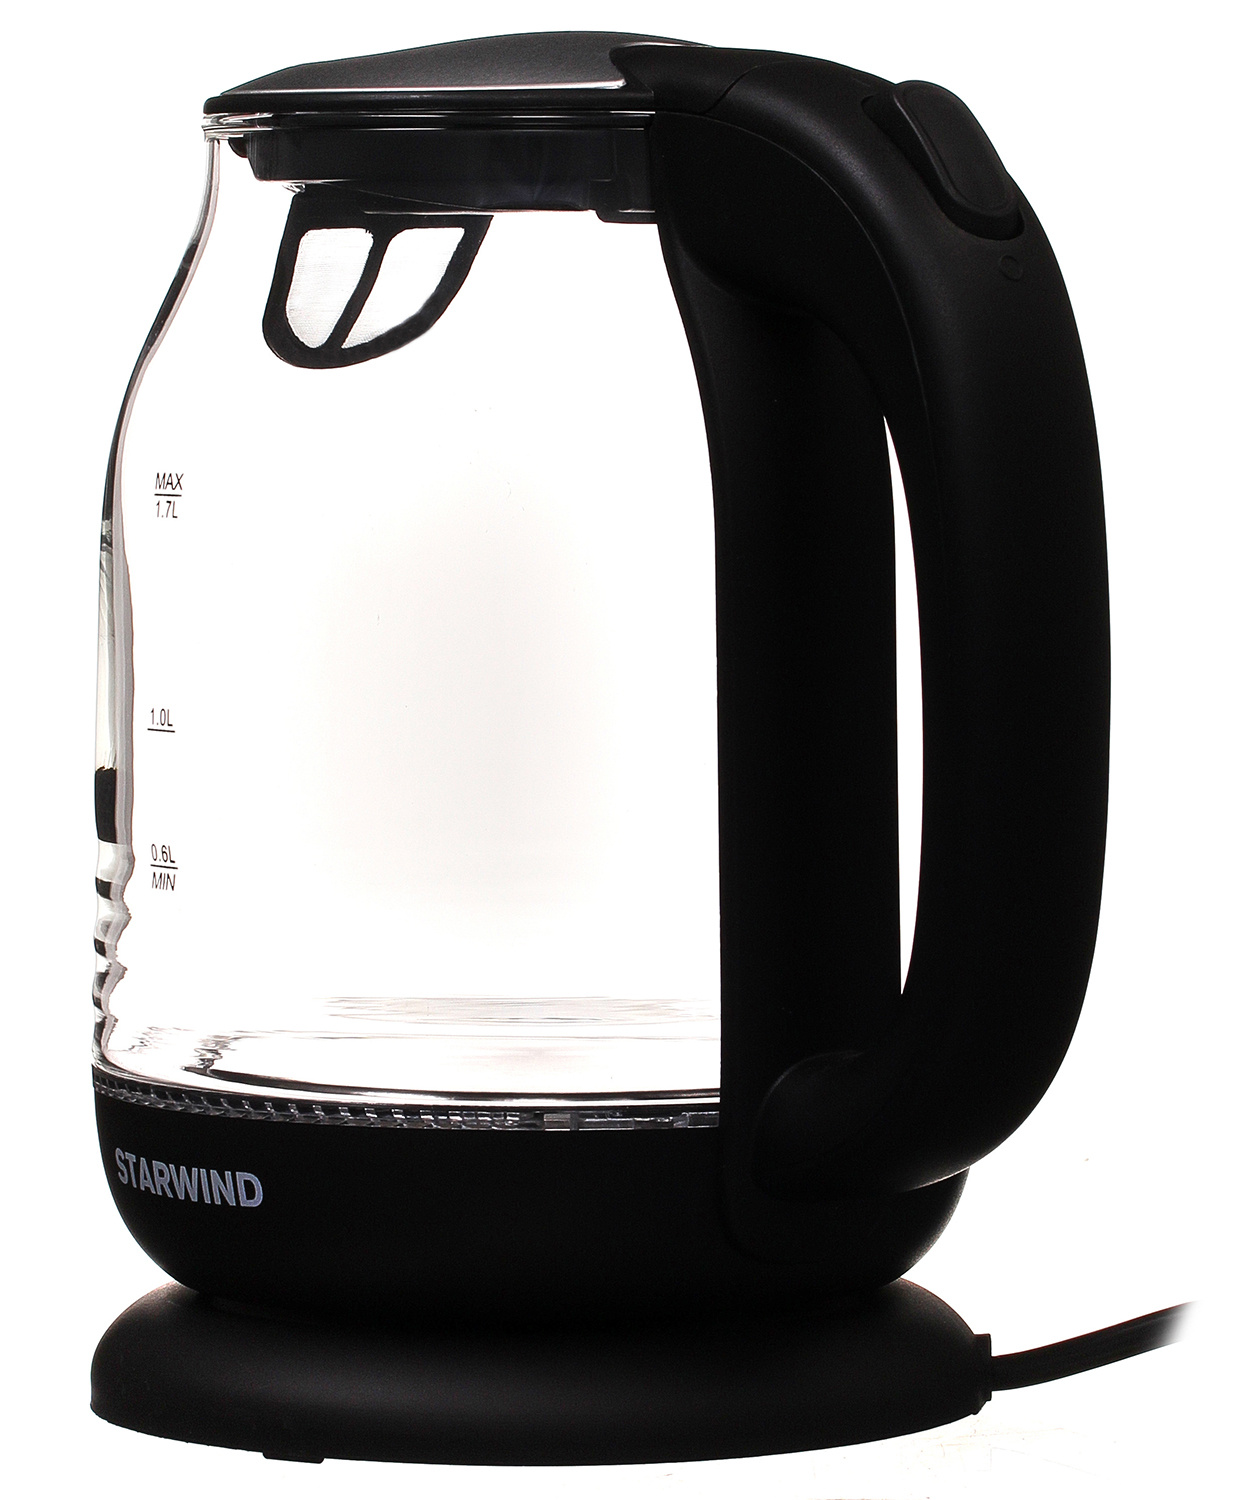 Чайник электрический Starwind SKG1311 черный/серебристый, стекло от магазина Старвинд